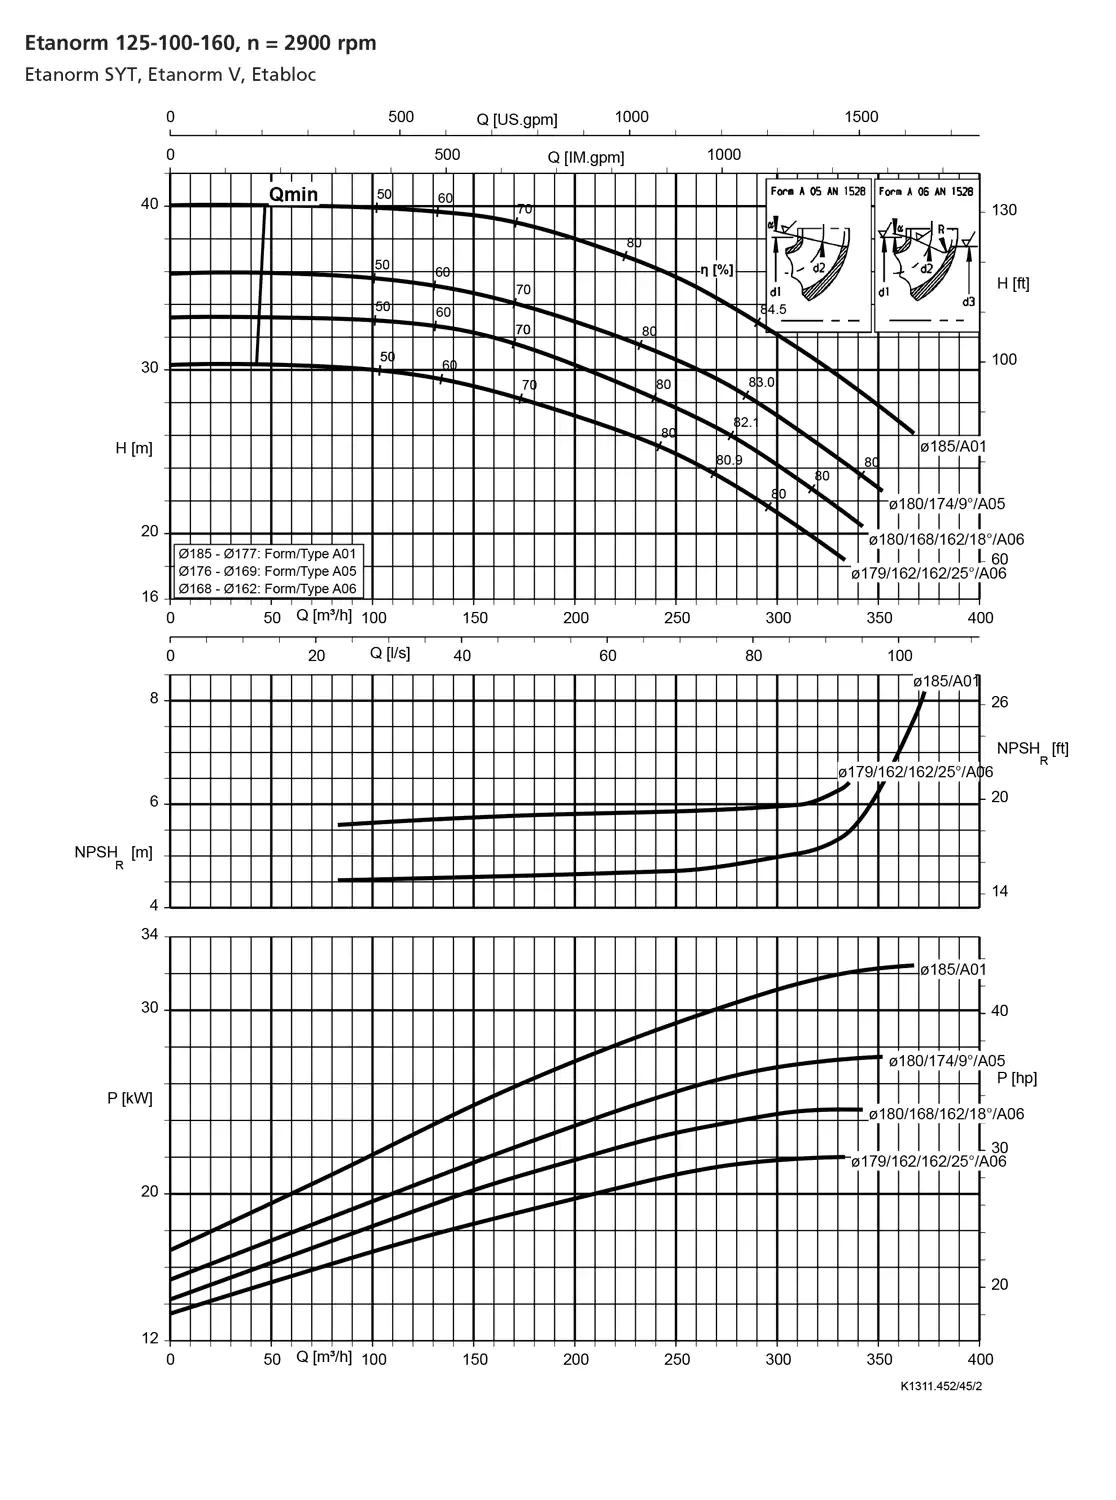 نمودار-کارکرد-پمپ-etanorm-syt-125-100-160-2900